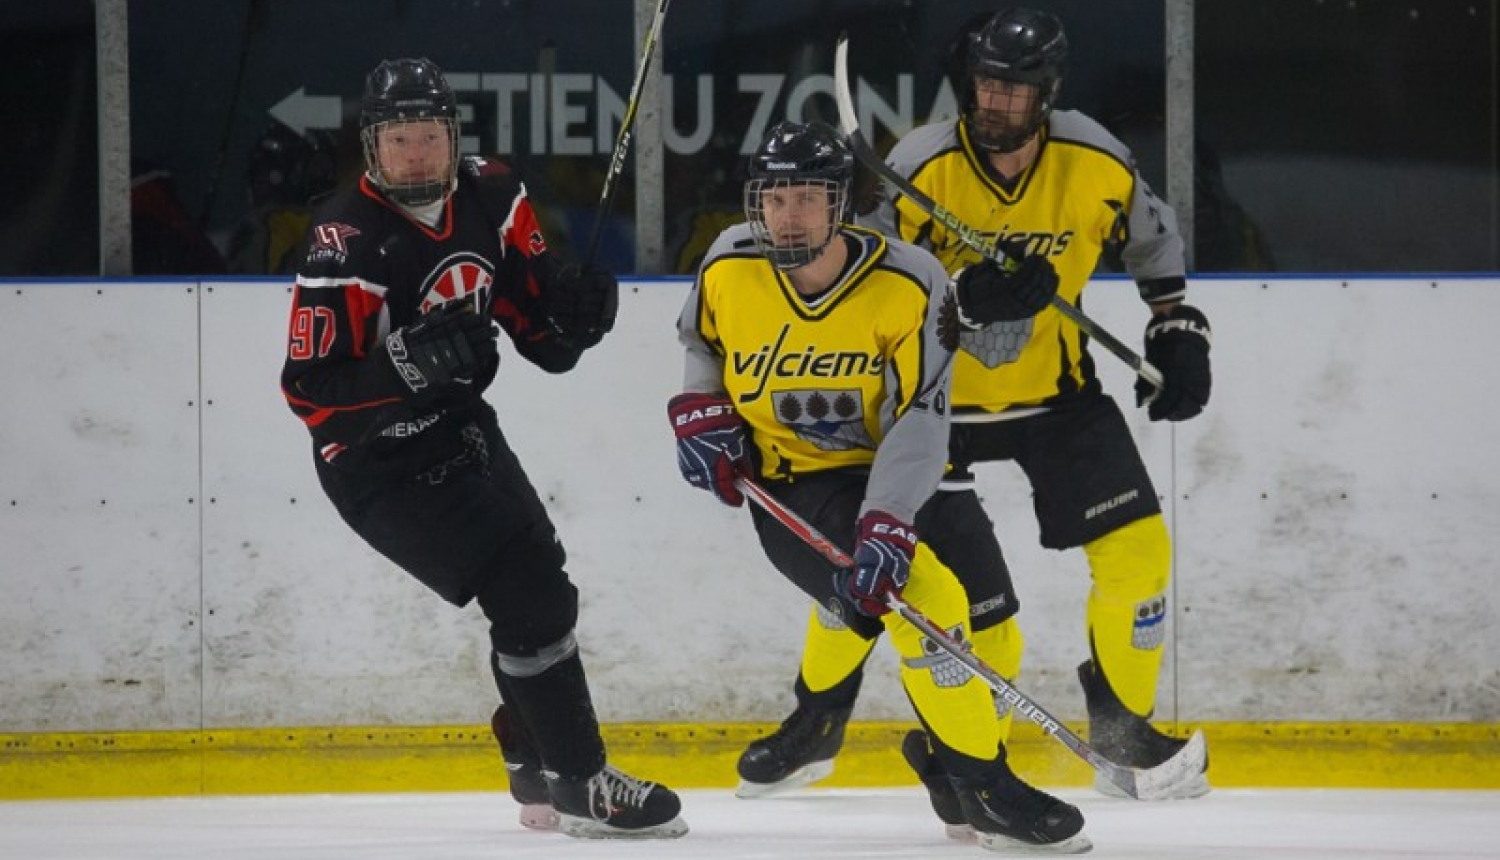 Vijciemieši iegūst godpilno trešo vietu Vidzemes atklātā čempionāta hokejā 1. līgā